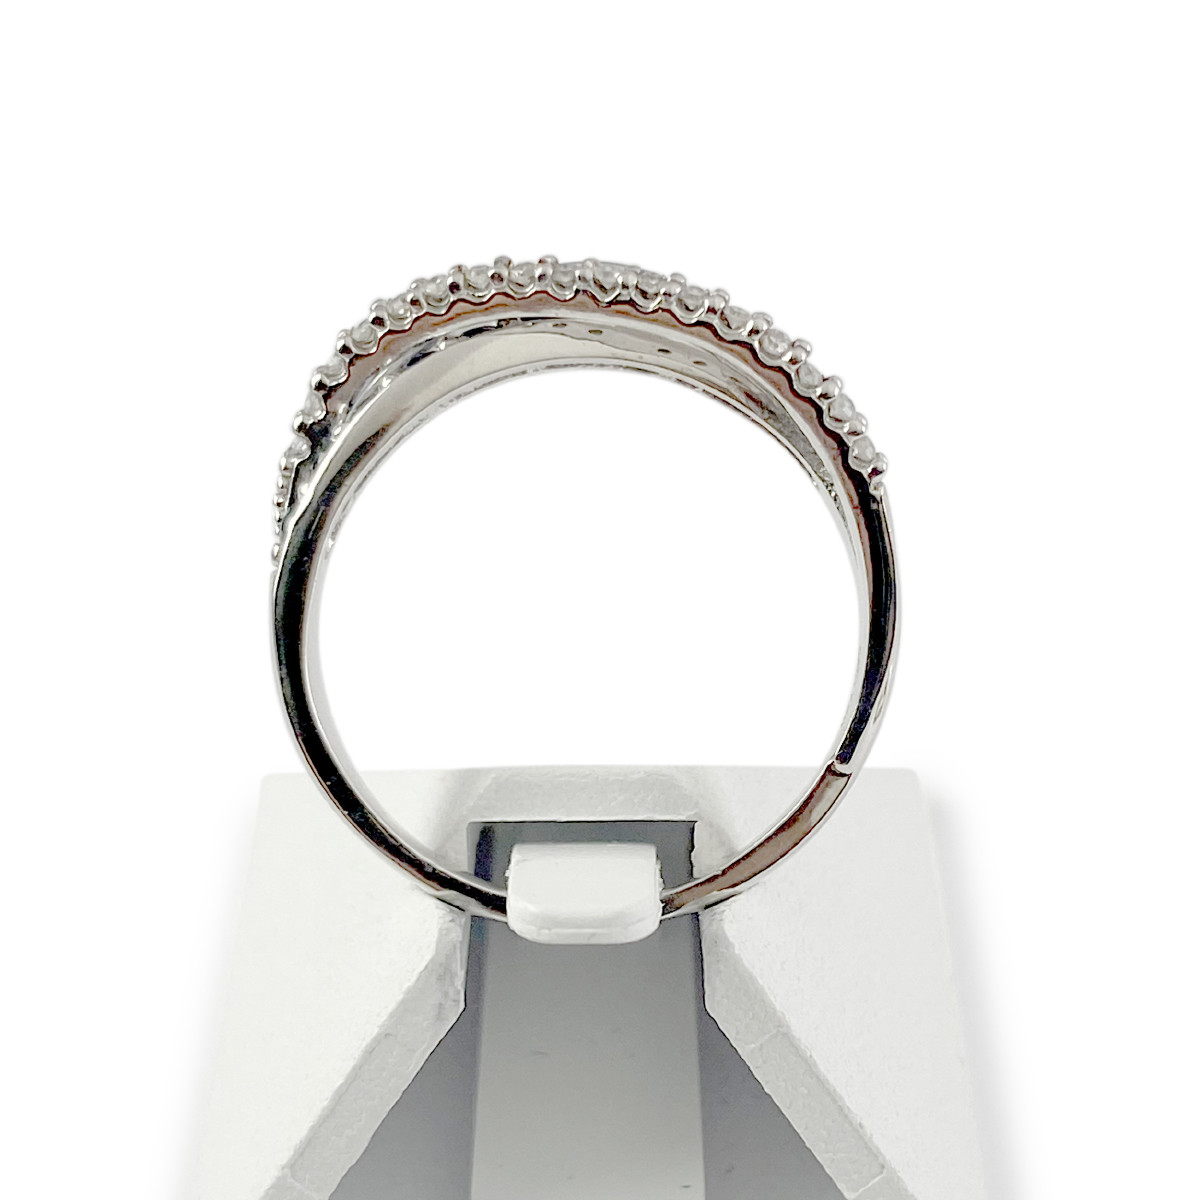 Bague d'occasion or 750 blanc anneaux entrelacés saphirs et diamants - vue 3